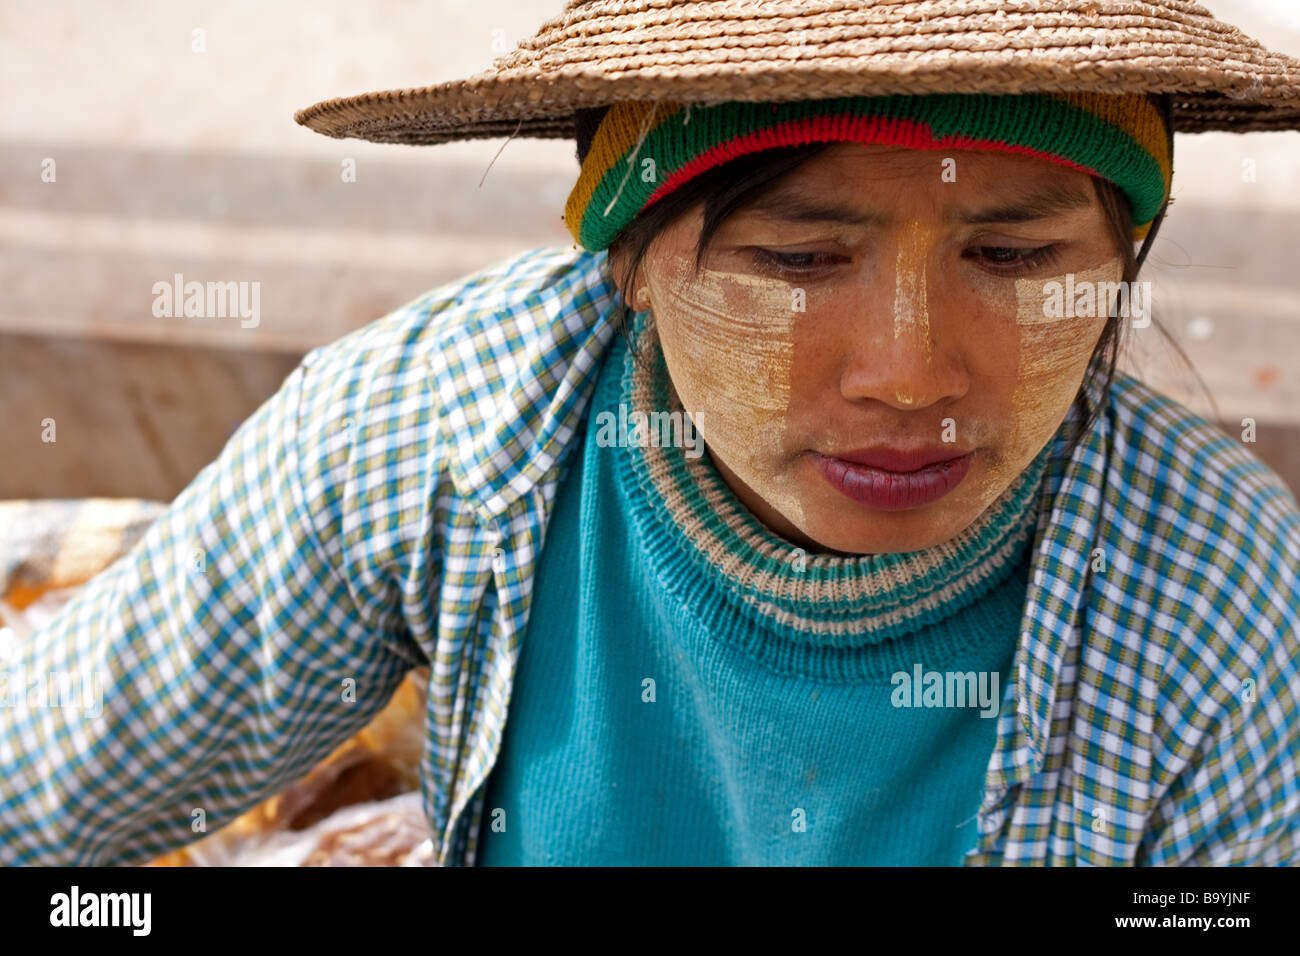 Bamar woman vendor in Shan State, Myanmar Stock Photo